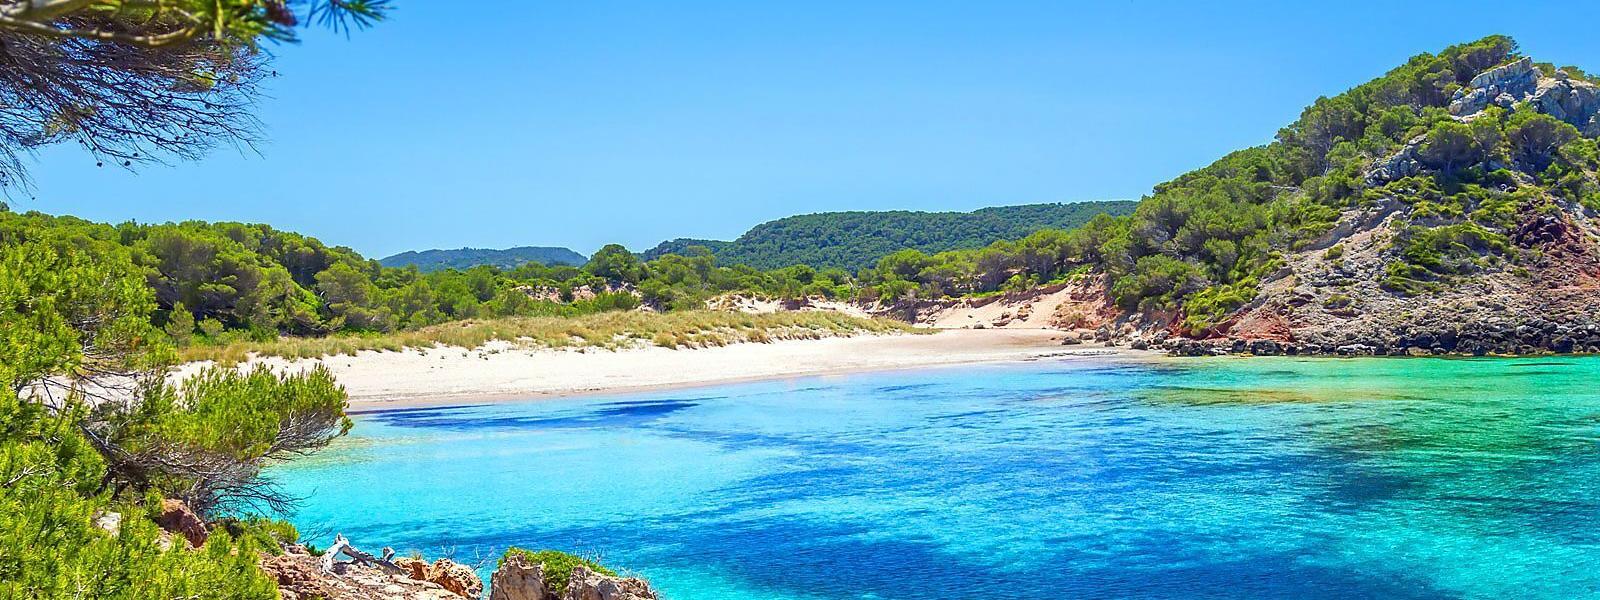 Ferienwohnungen und Ferienhäuser auf Menorca - atraveo